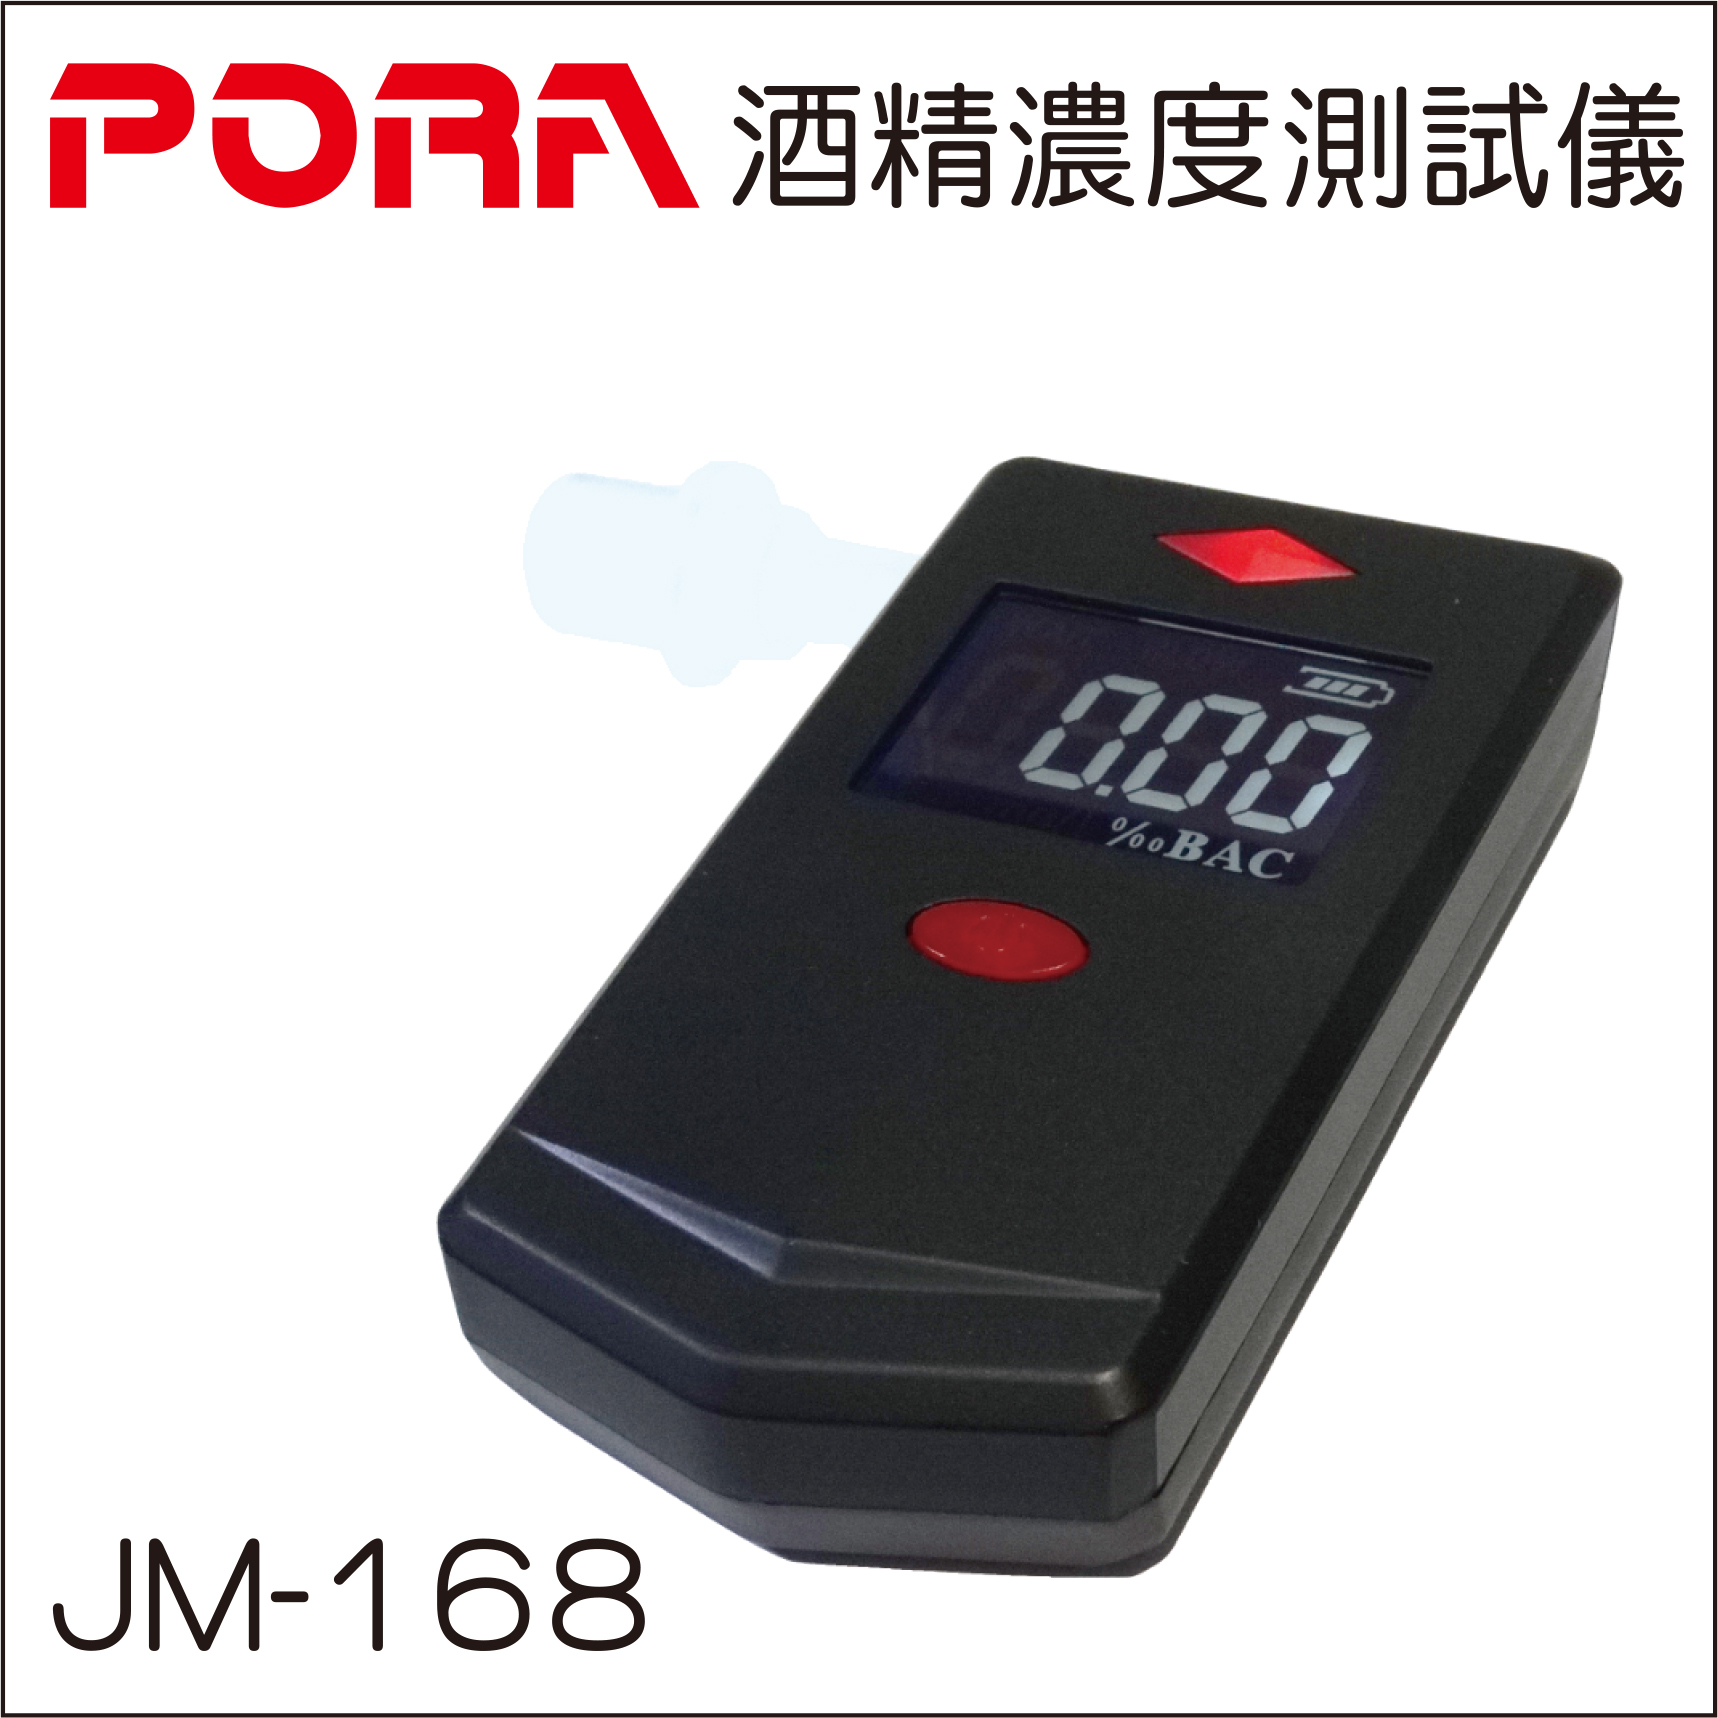 PORA JM-168酒精濃度測試儀的第1張圖片